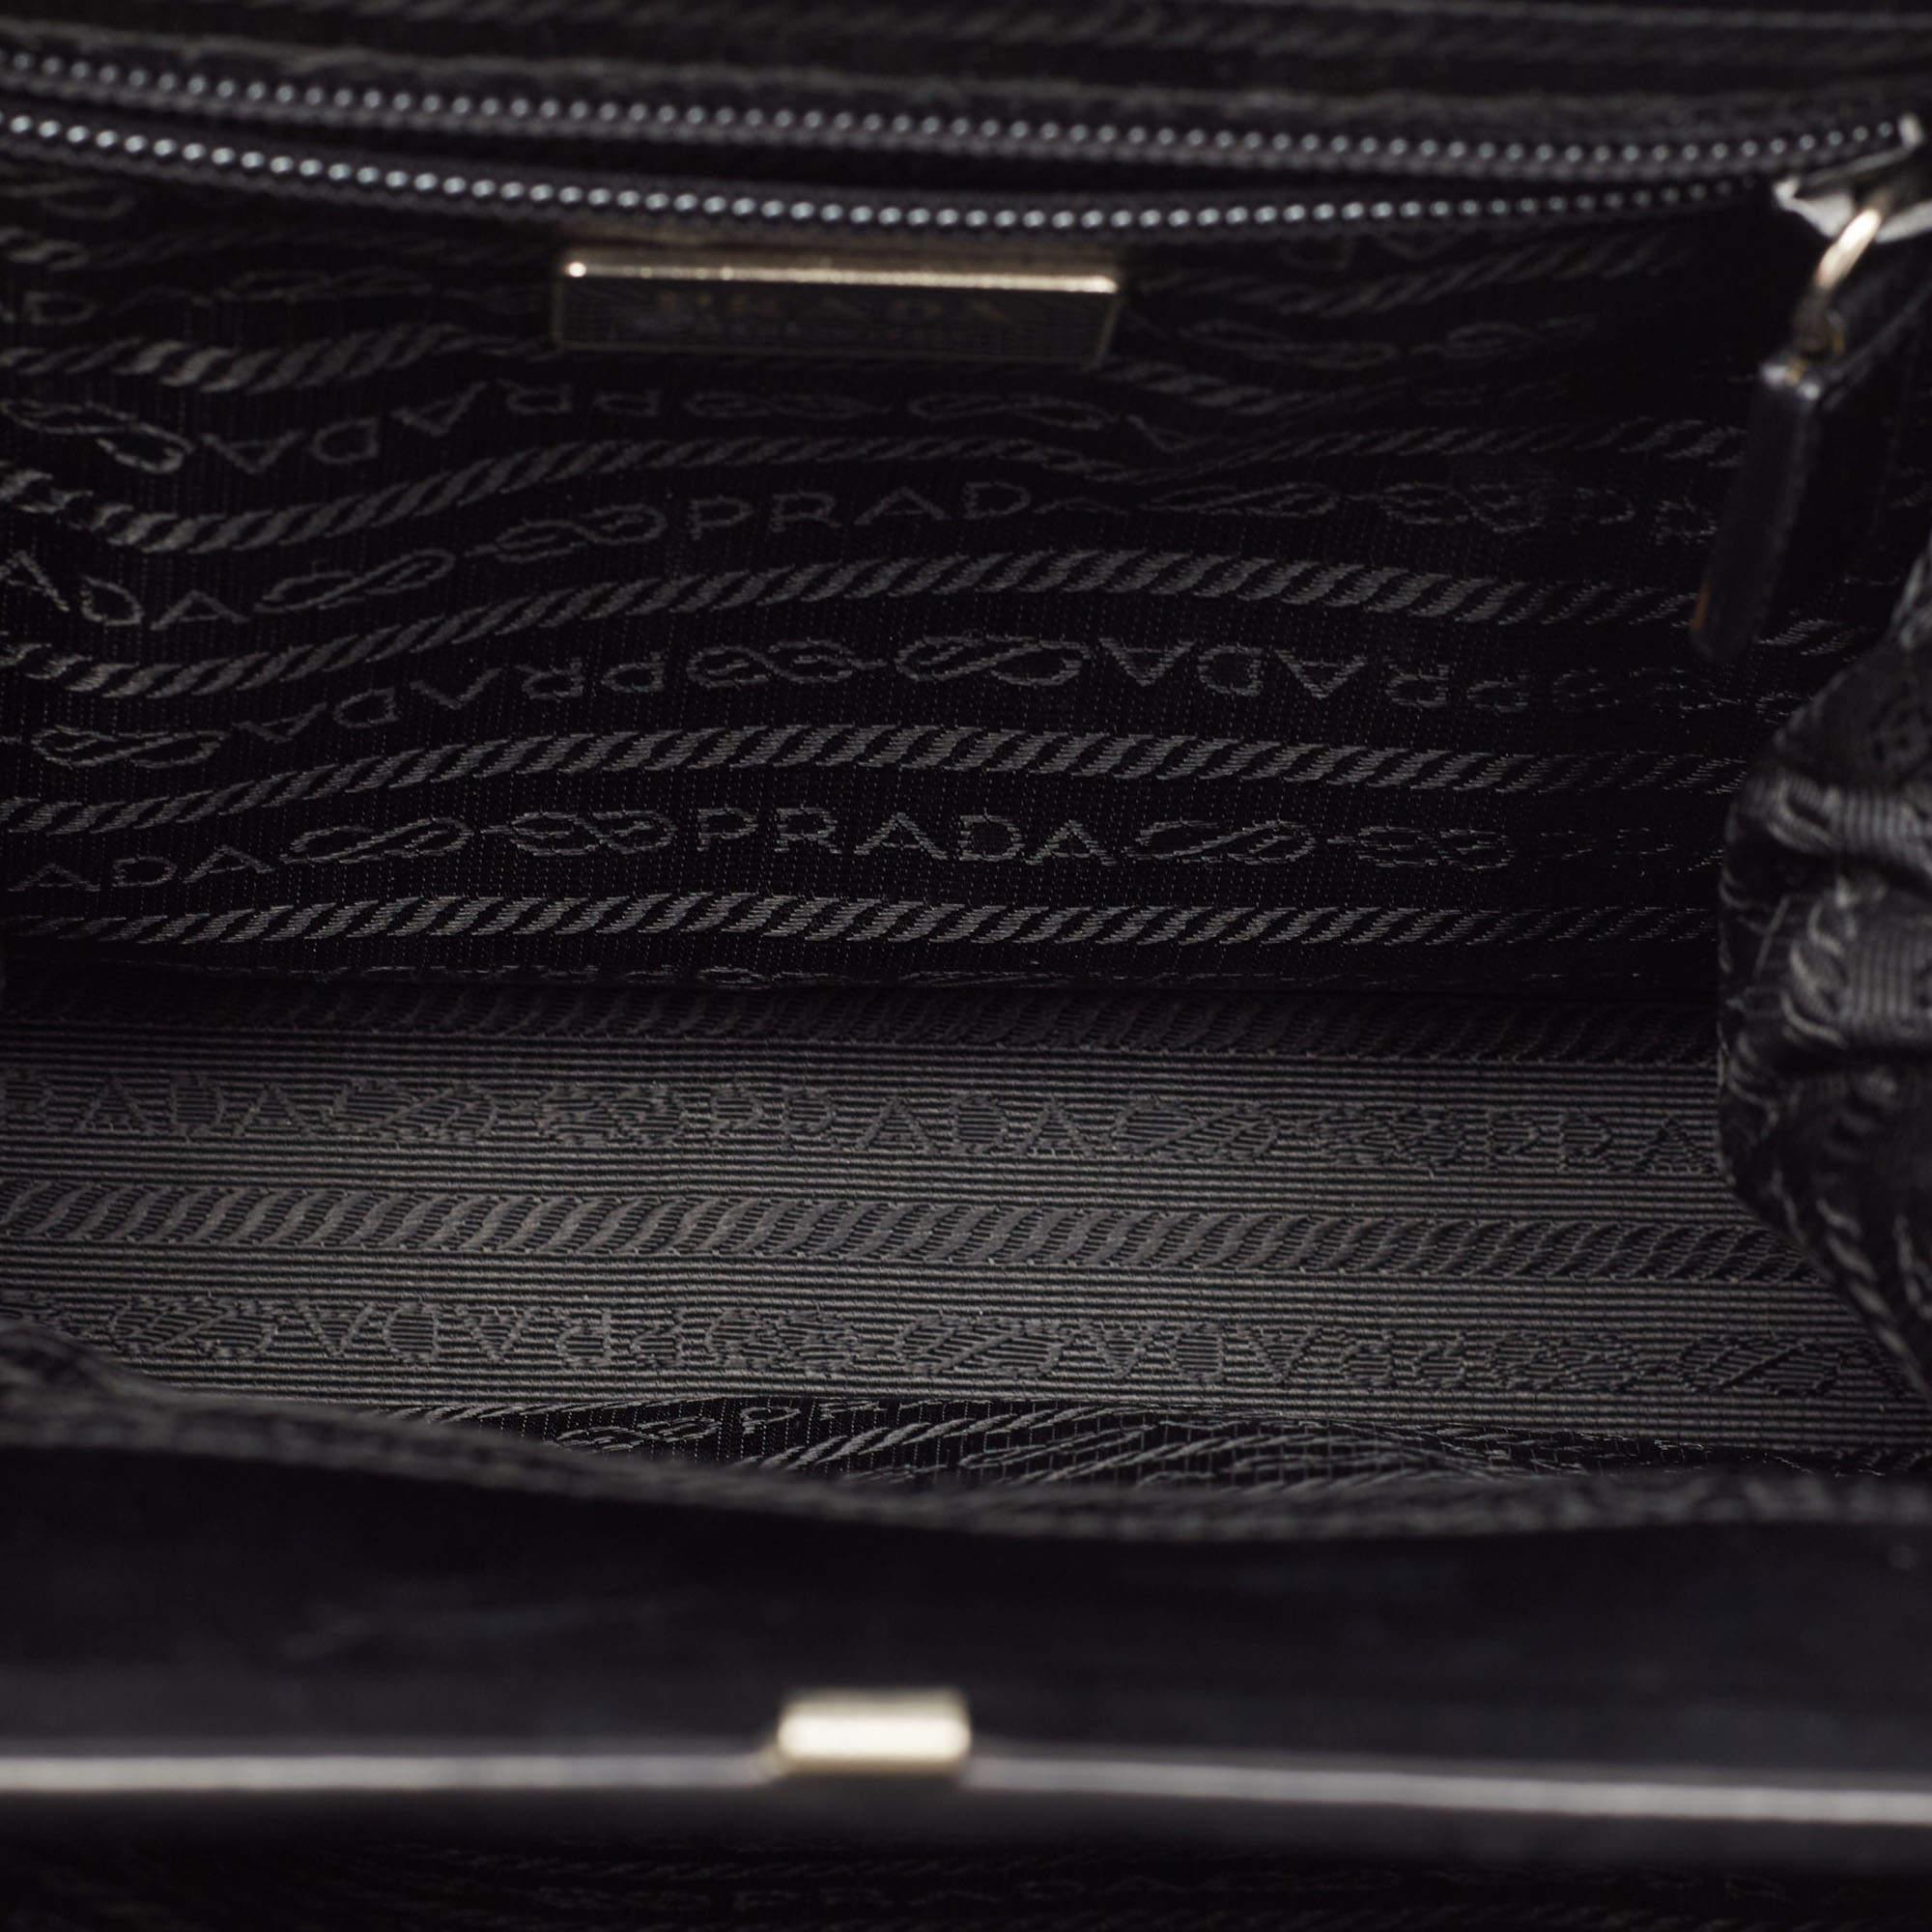 Prada Schwarz/Weiße Tasche mit Lacklederrahmen und Henkel oben 4